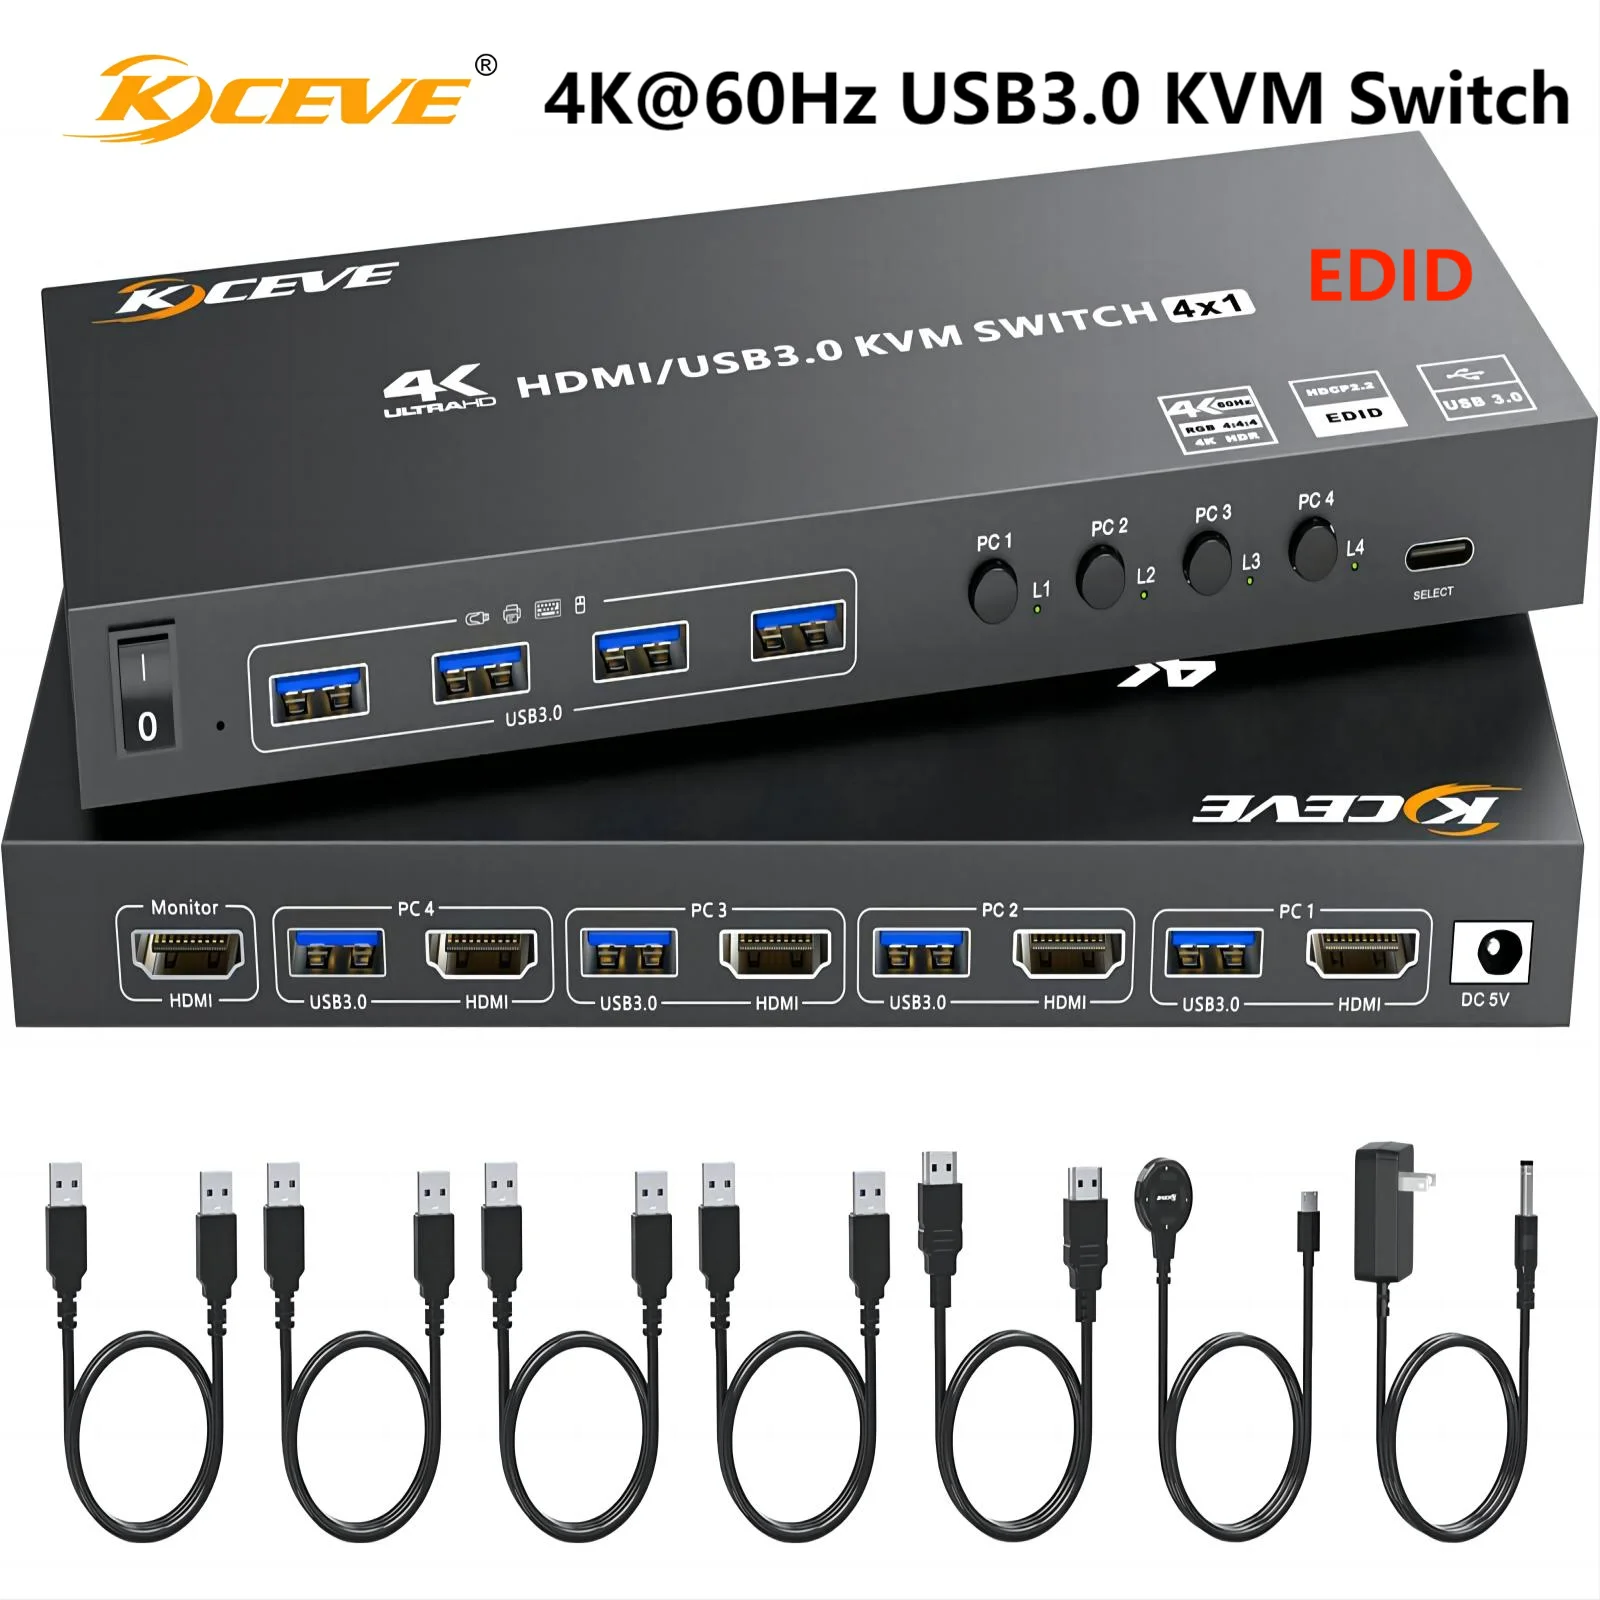 

HDMI KVM переключатель 4 компьютера 4K @ 60 Гц 2K @ 120 Гц, имитация EDID,USB3.0 KVM переключатели для 4 ПК Share 1 монитор клавиатуры мыши принтера